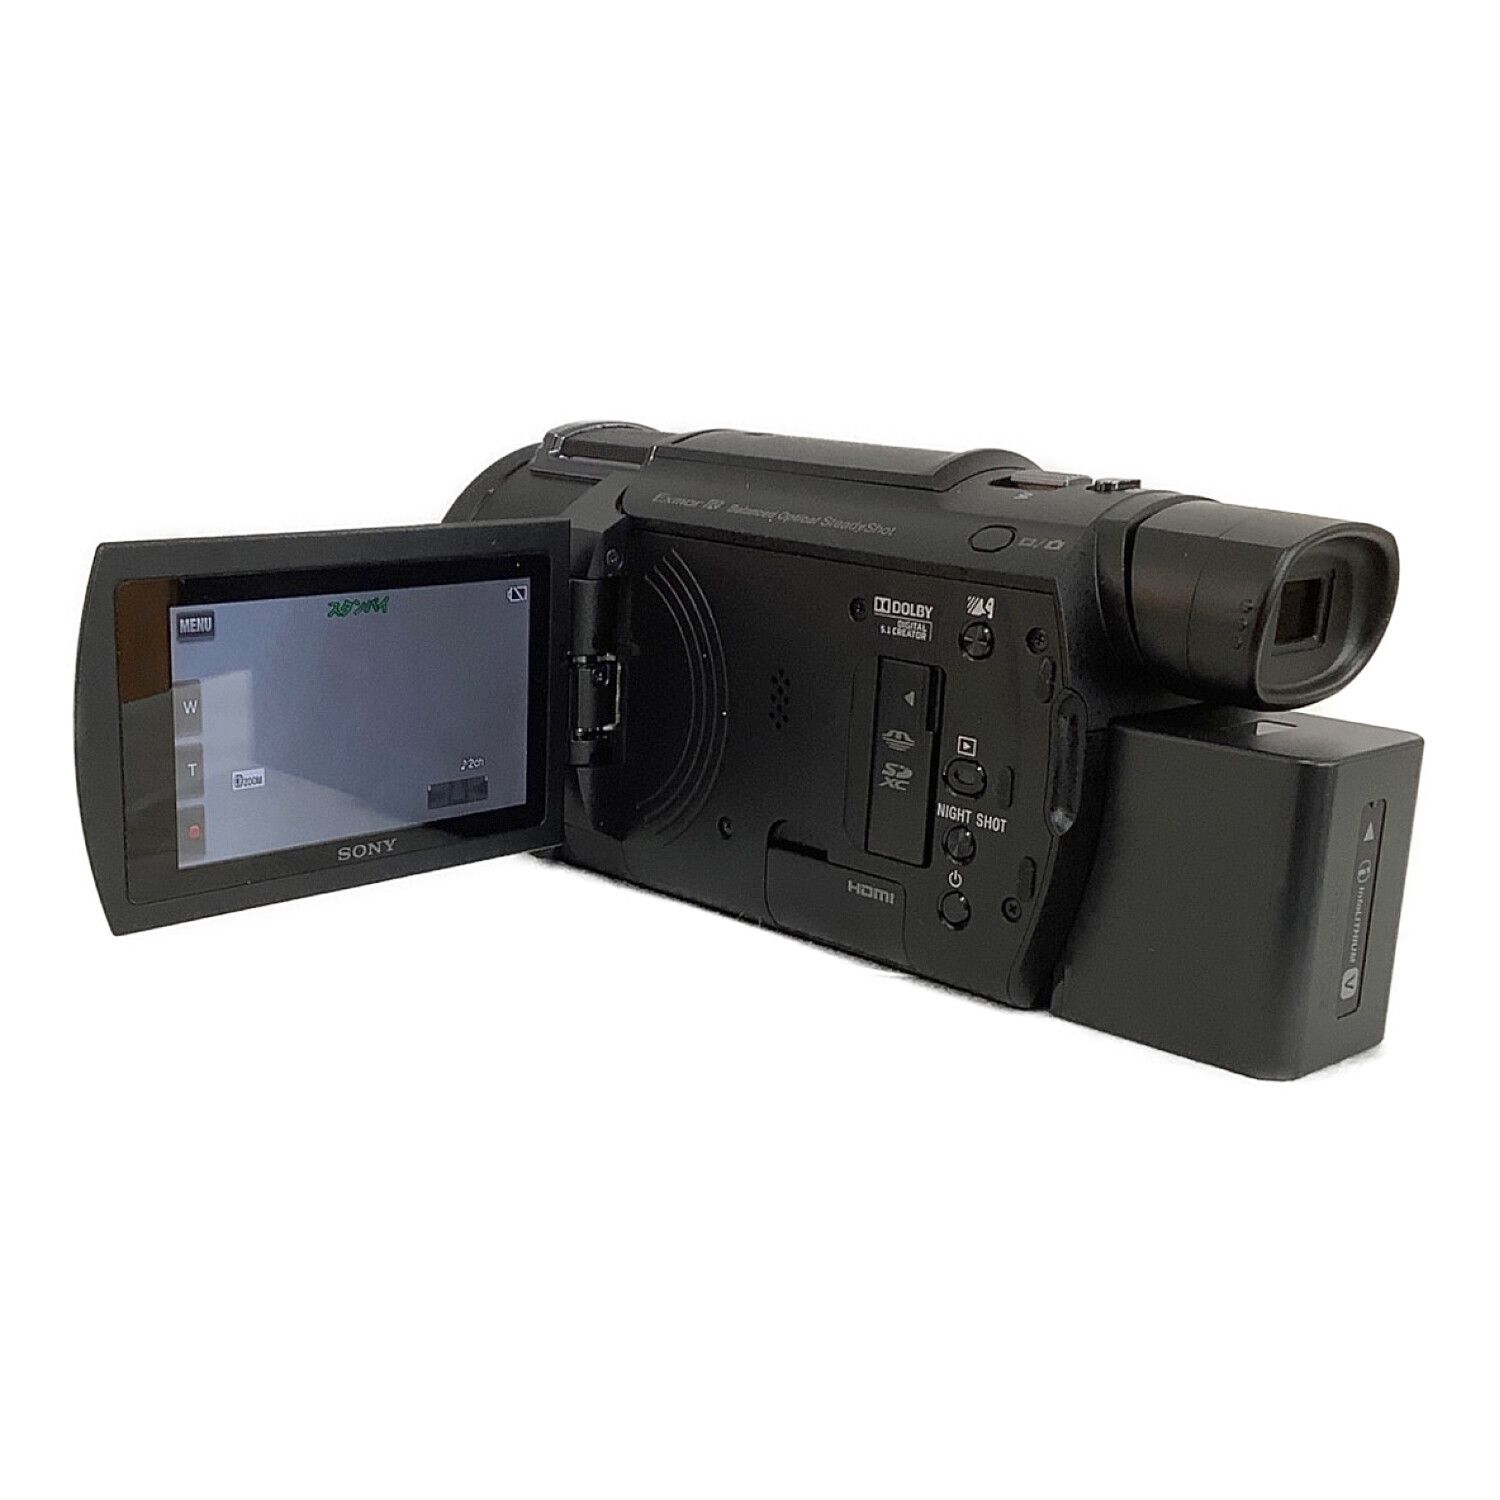 SONY (ソニー) デジタル4Kビデオカメラ 撮影時間150 分 829万画素 SD ...